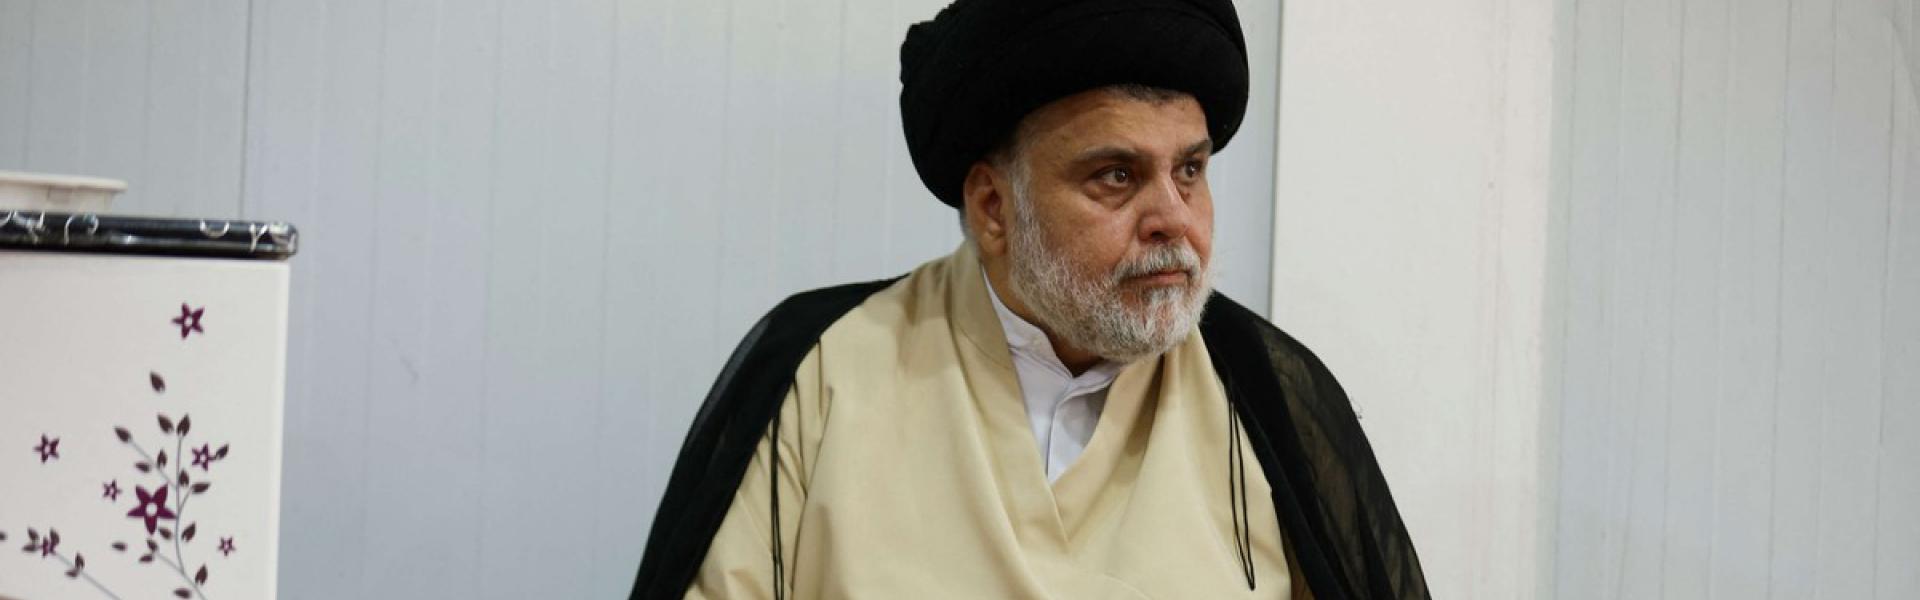 الزعيم الشيعي يصف الحكومة الأميركية بـ"المتهالكة"